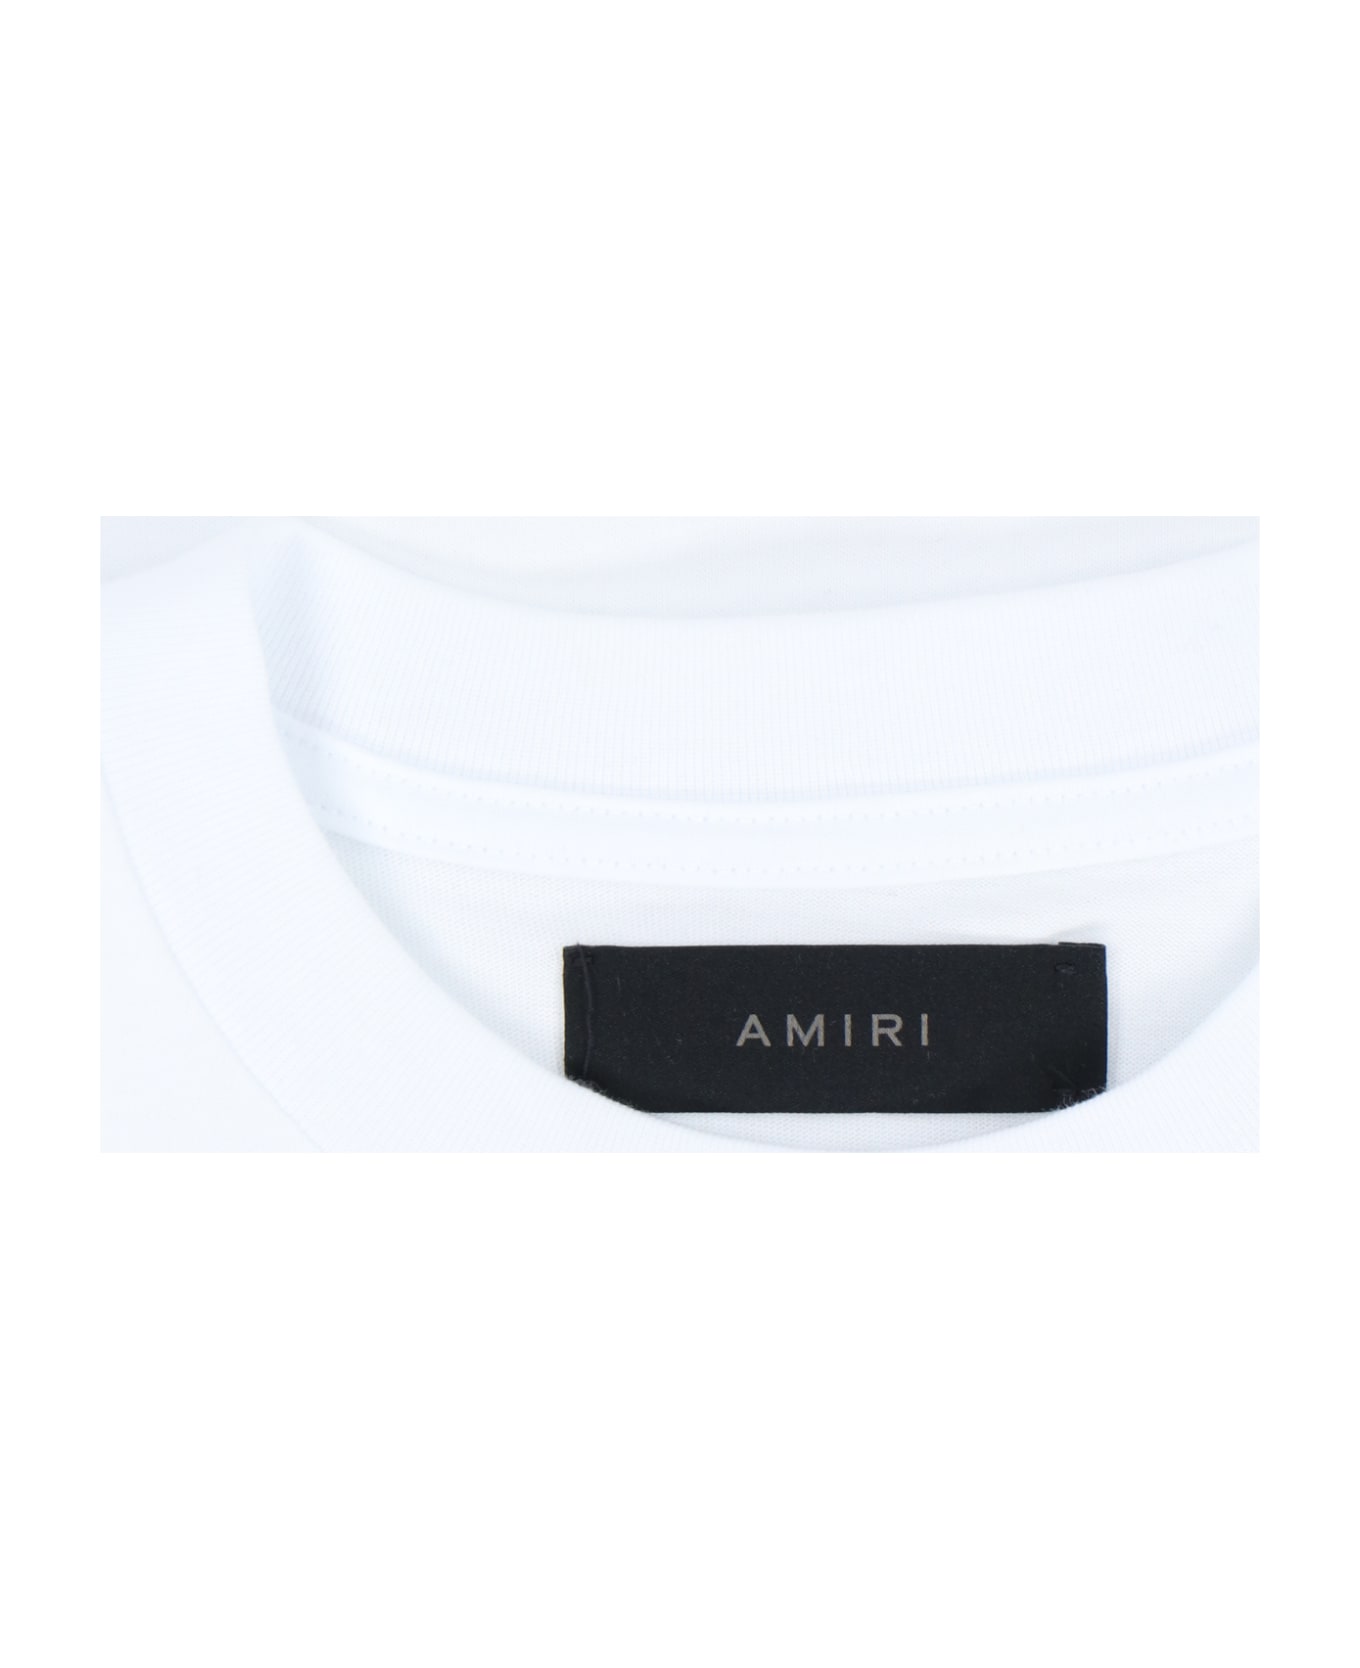 AMIRI Back Print T-shirt - White